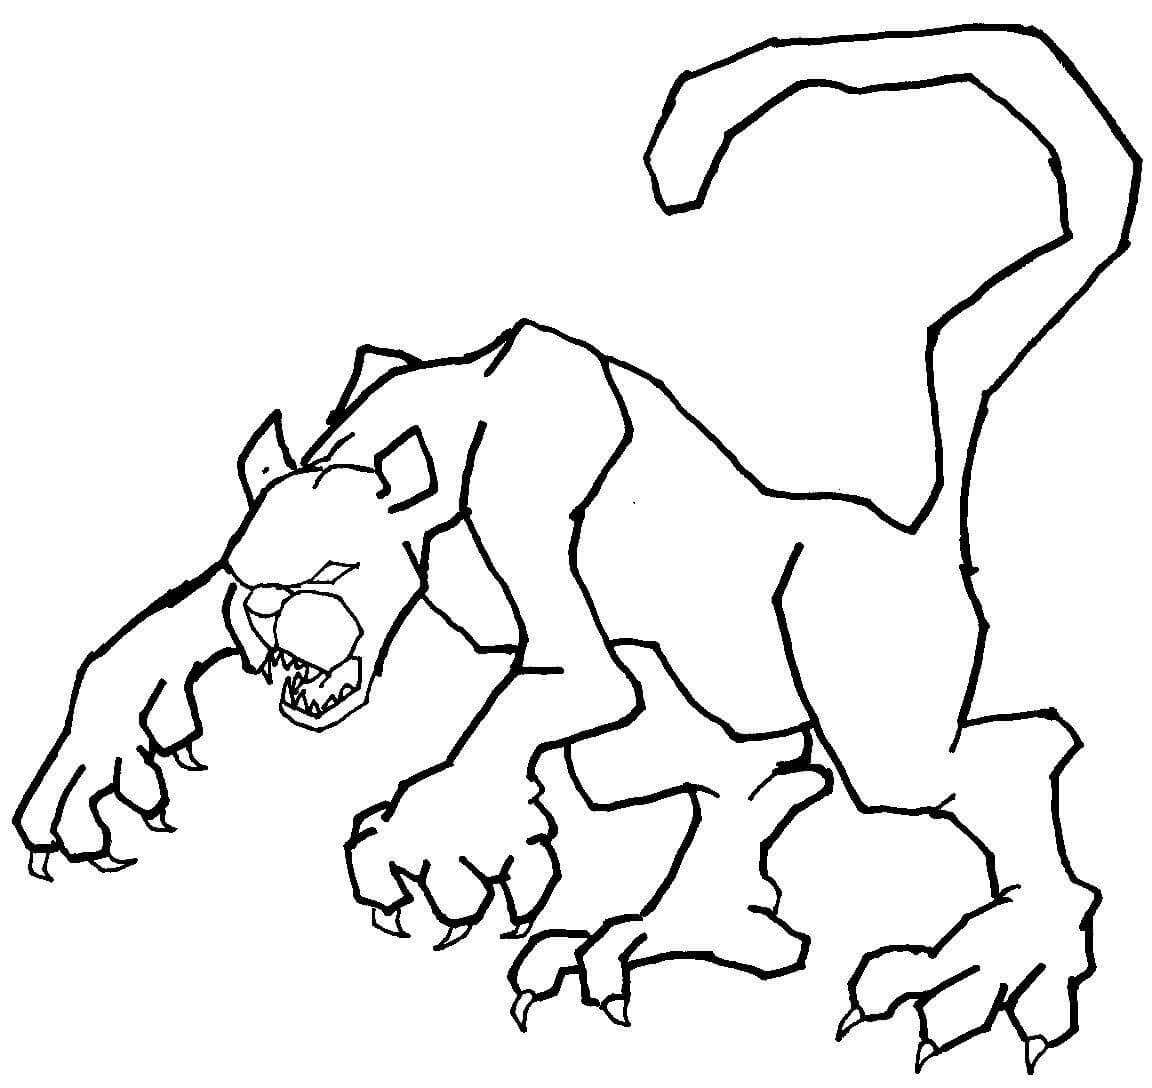 Dibujos de Dibujo de Puma Aterrador para colorear